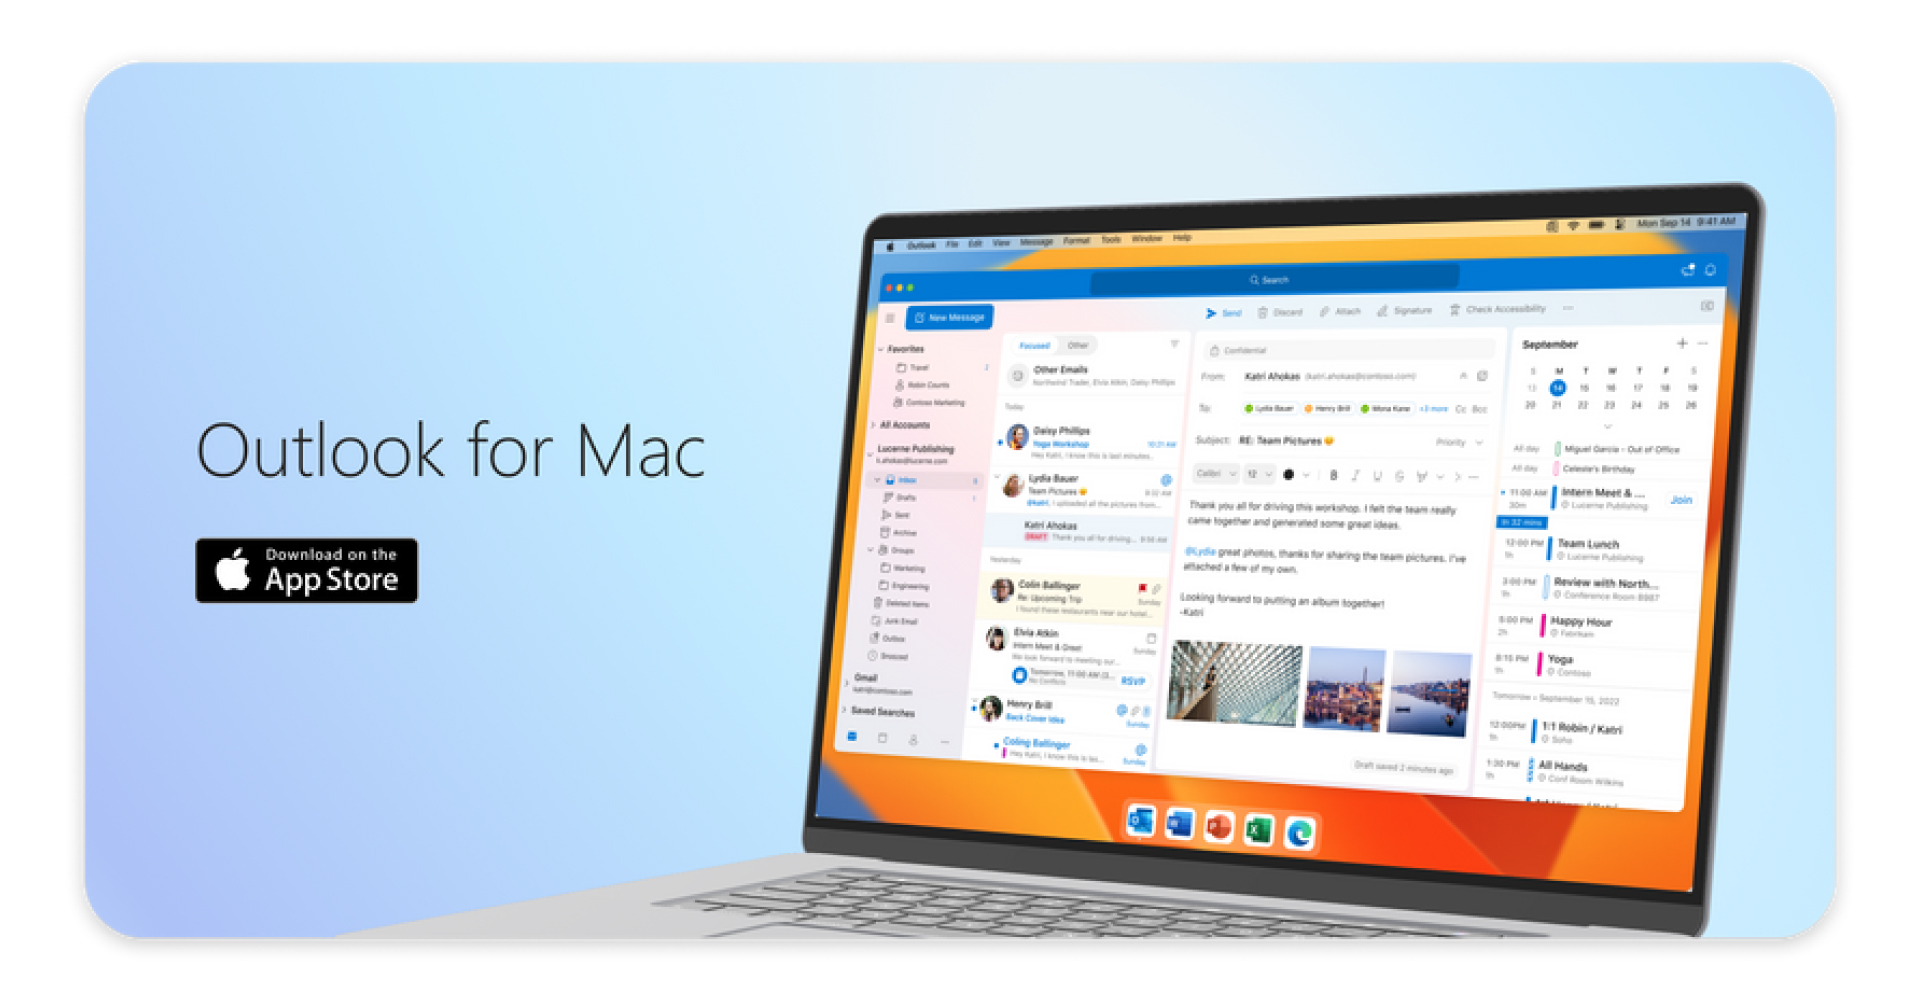 ไมโครซอฟท์เปิดให้ใช้ Outlook ฟรีบน Mac ไม่ต้องสมัคร Microsoft 365!